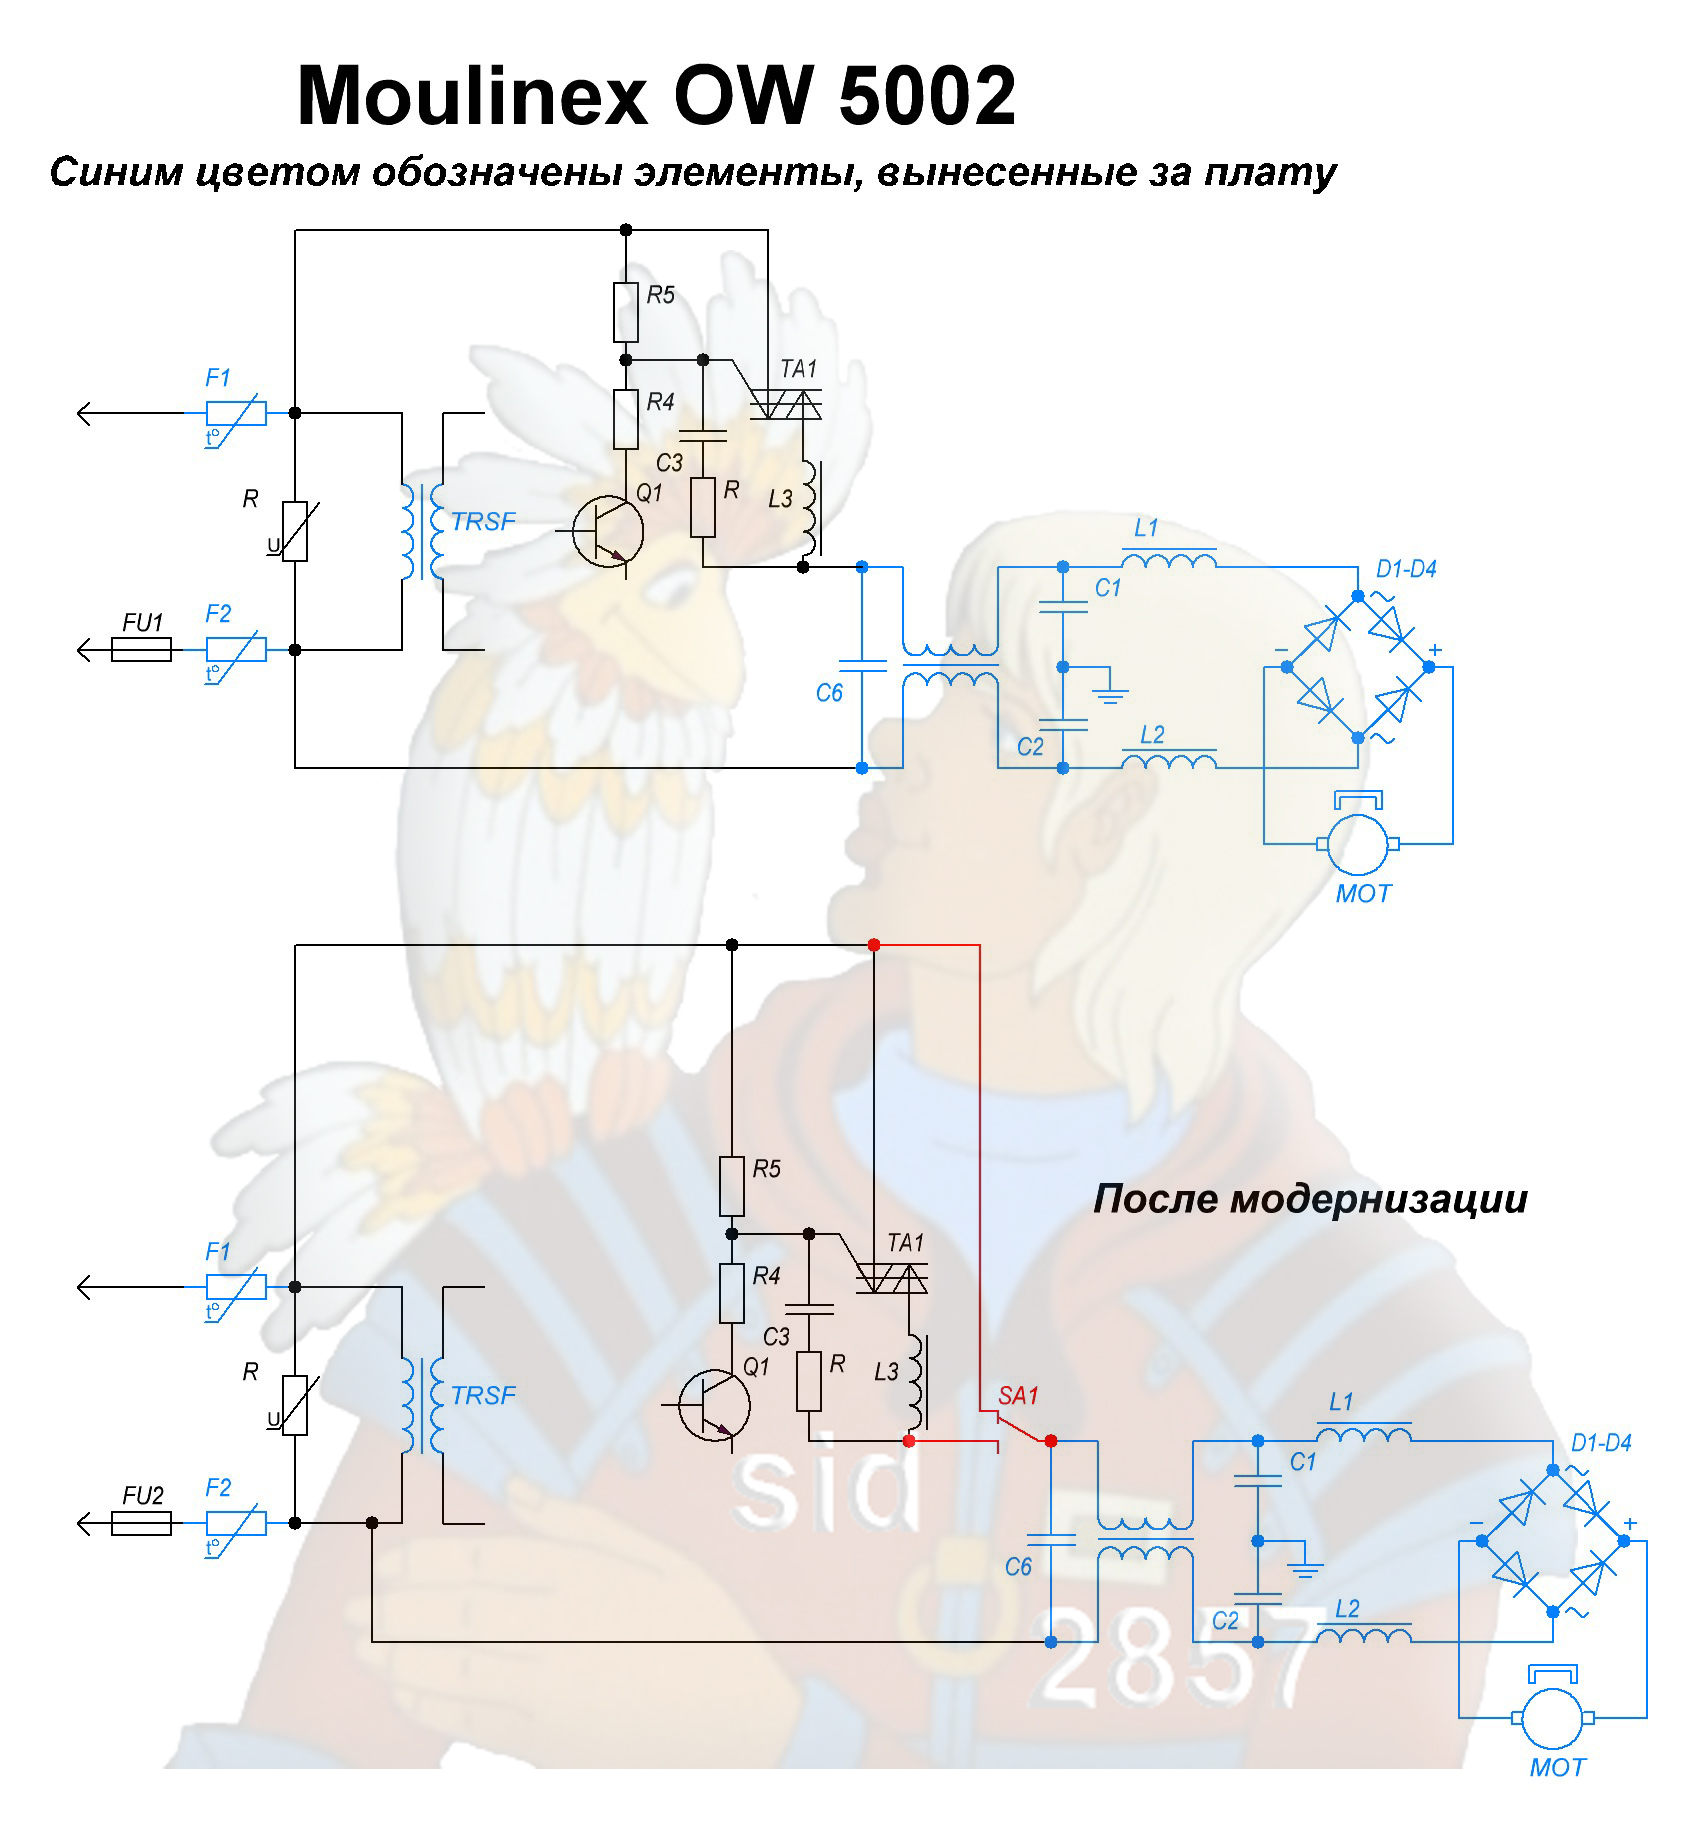 Riparazione dell'arresto del motore HP Moulinex 5002